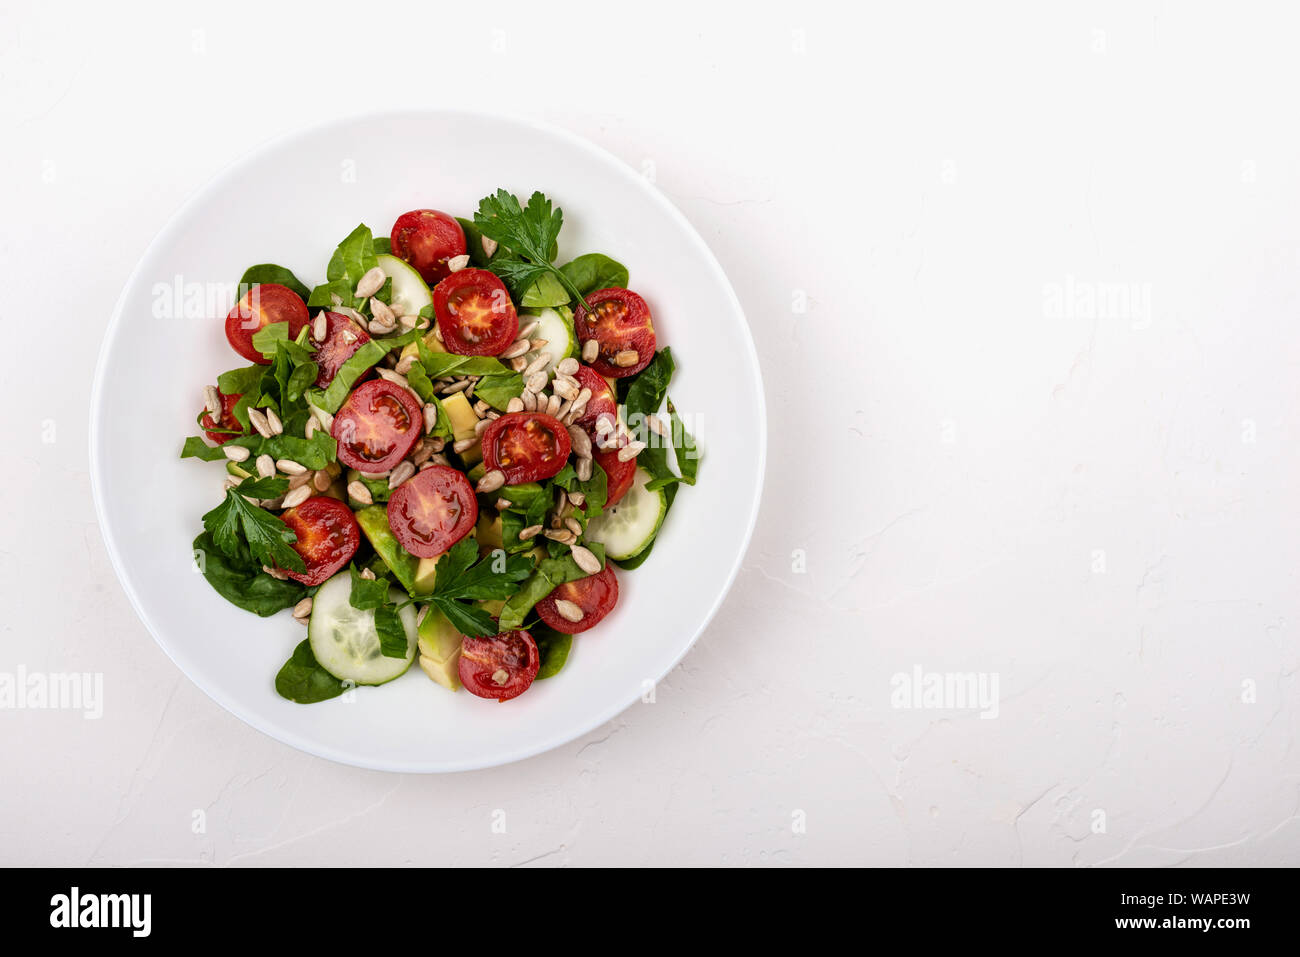 Con insalata di avocado, cetrioli e pomodori ciliegini, spinaci foglie di prezzemolo e i semi su una piastra bianca su sfondo bianco. Copia dello spazio. Foto Stock